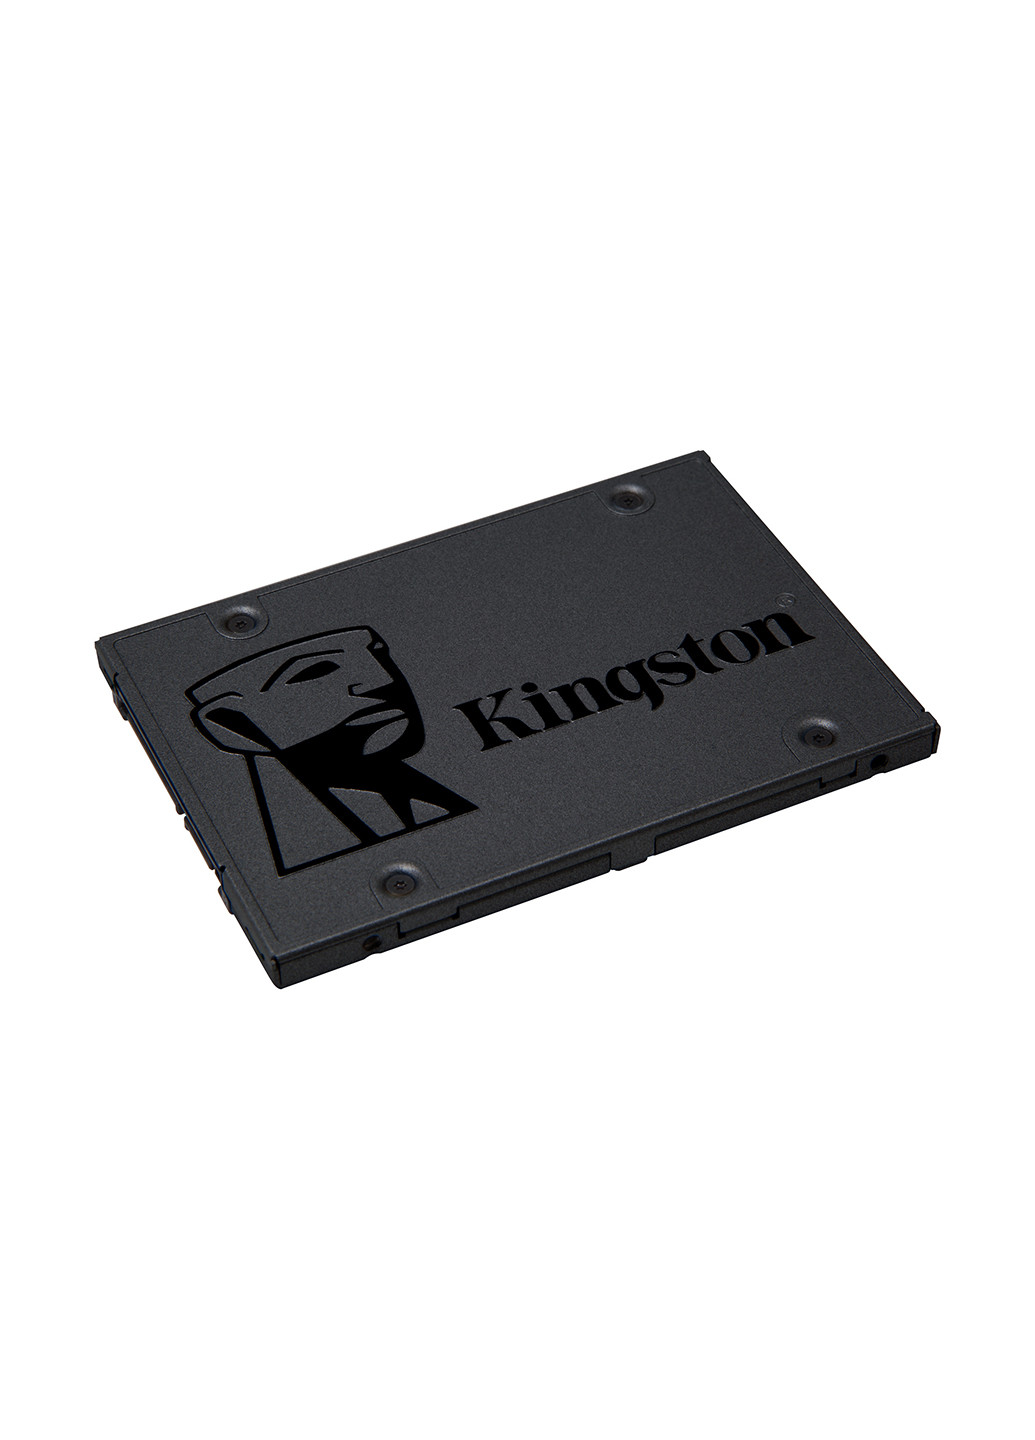 Внутрішній SSD A400 120GB 2.5 SATAIII TLC (SA400S37 / 120G) Kingston внутренний ssd kingston a400 120gb 2.5" sataiii tlc (sa400s37/120g) (133625211)